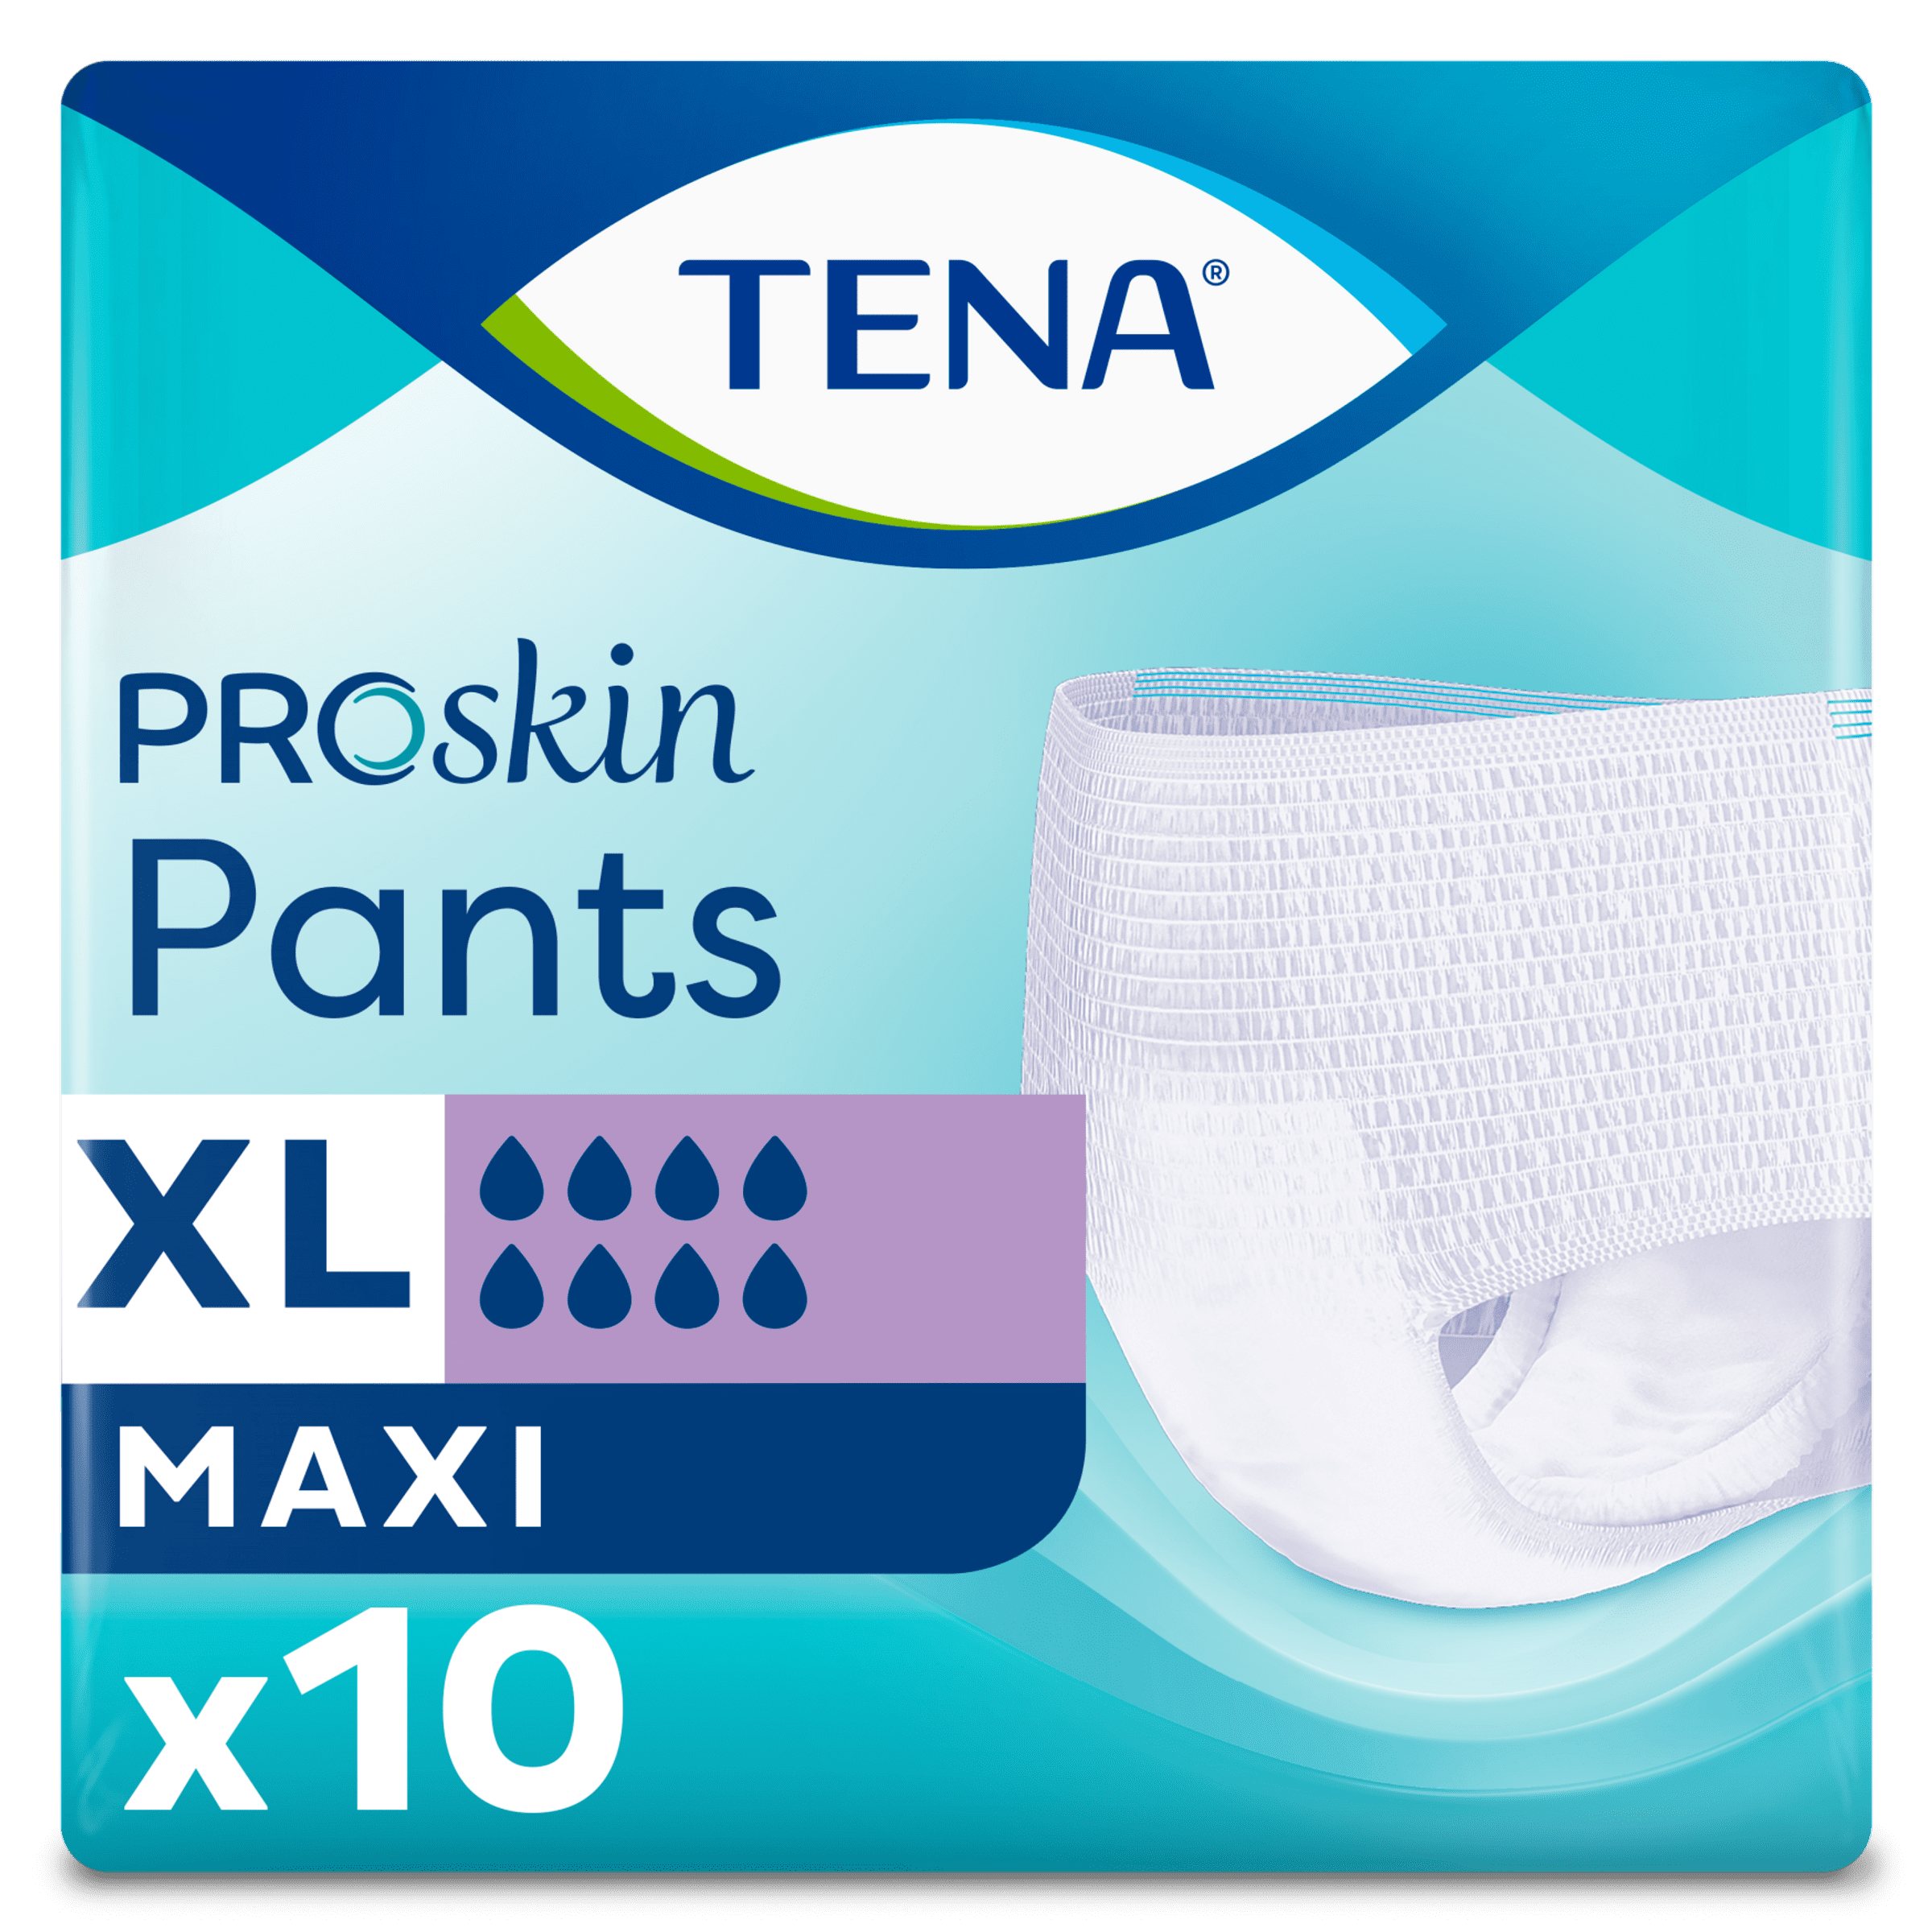 TENA ProSkin Pants Maxi XL